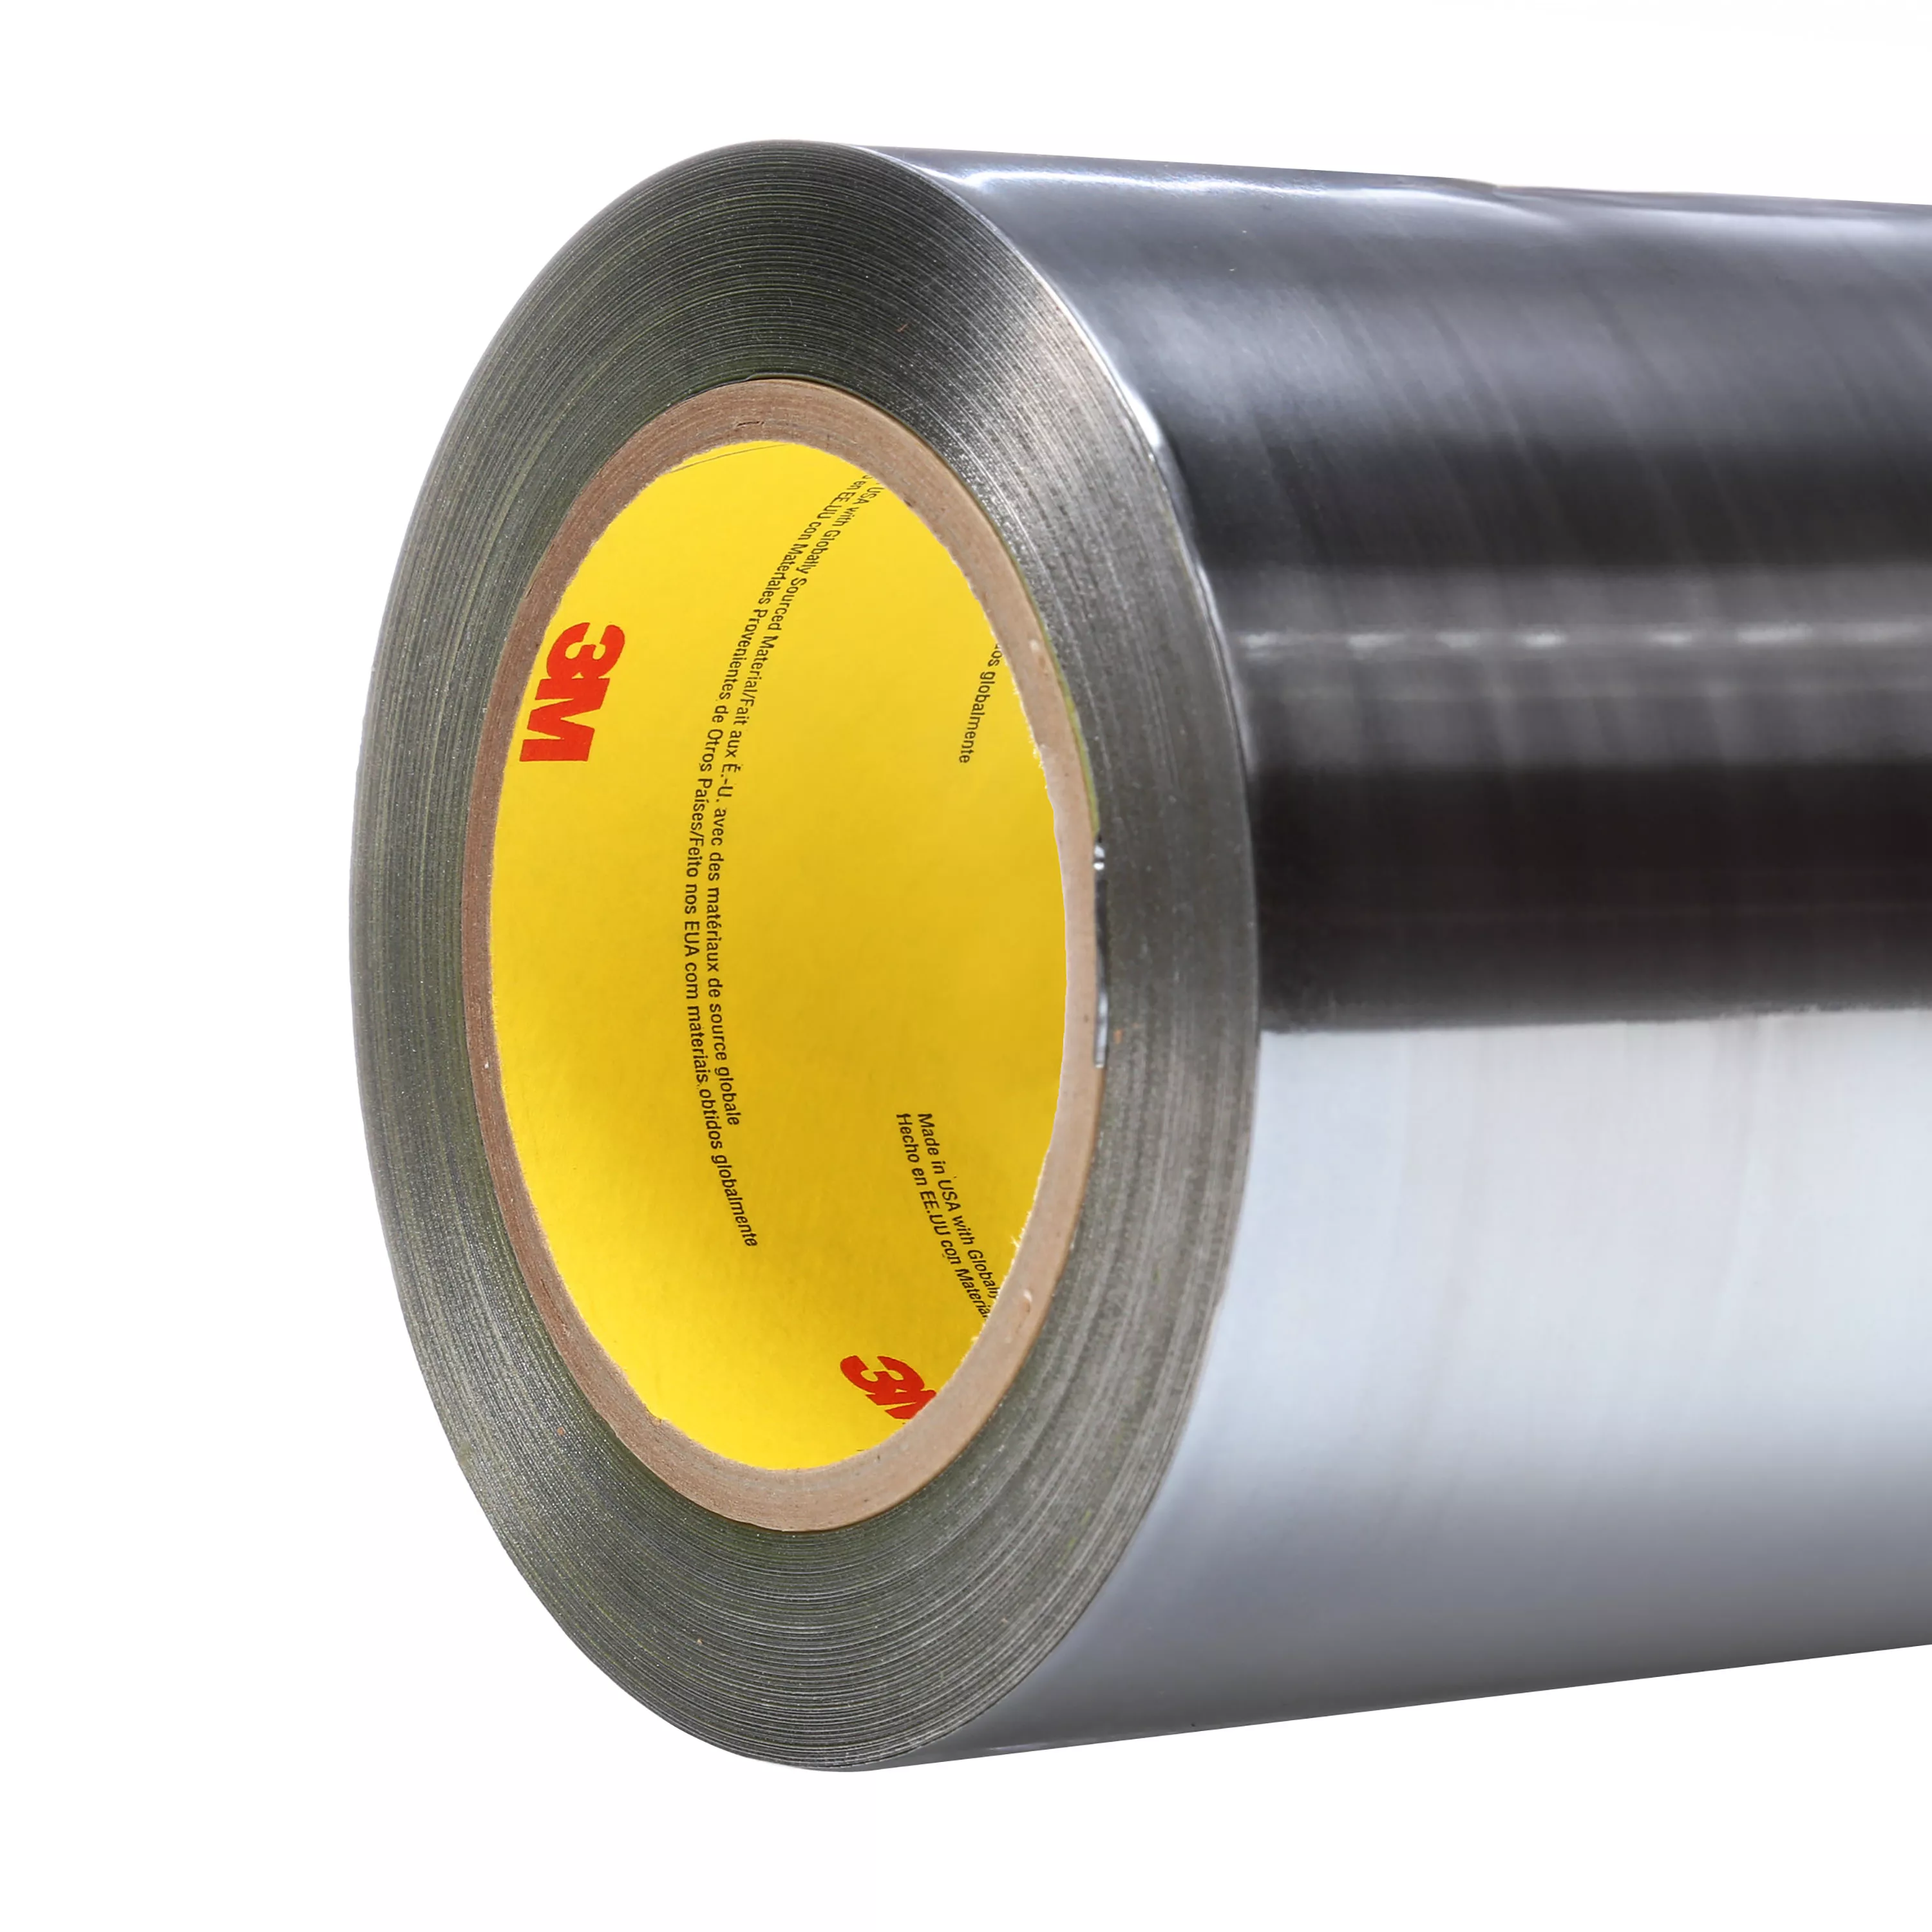 3M™ Aluminum Foil Tape 425 LT80, Silver, 10 in x 60 yd, 4.6 mil, 1 roll
per case